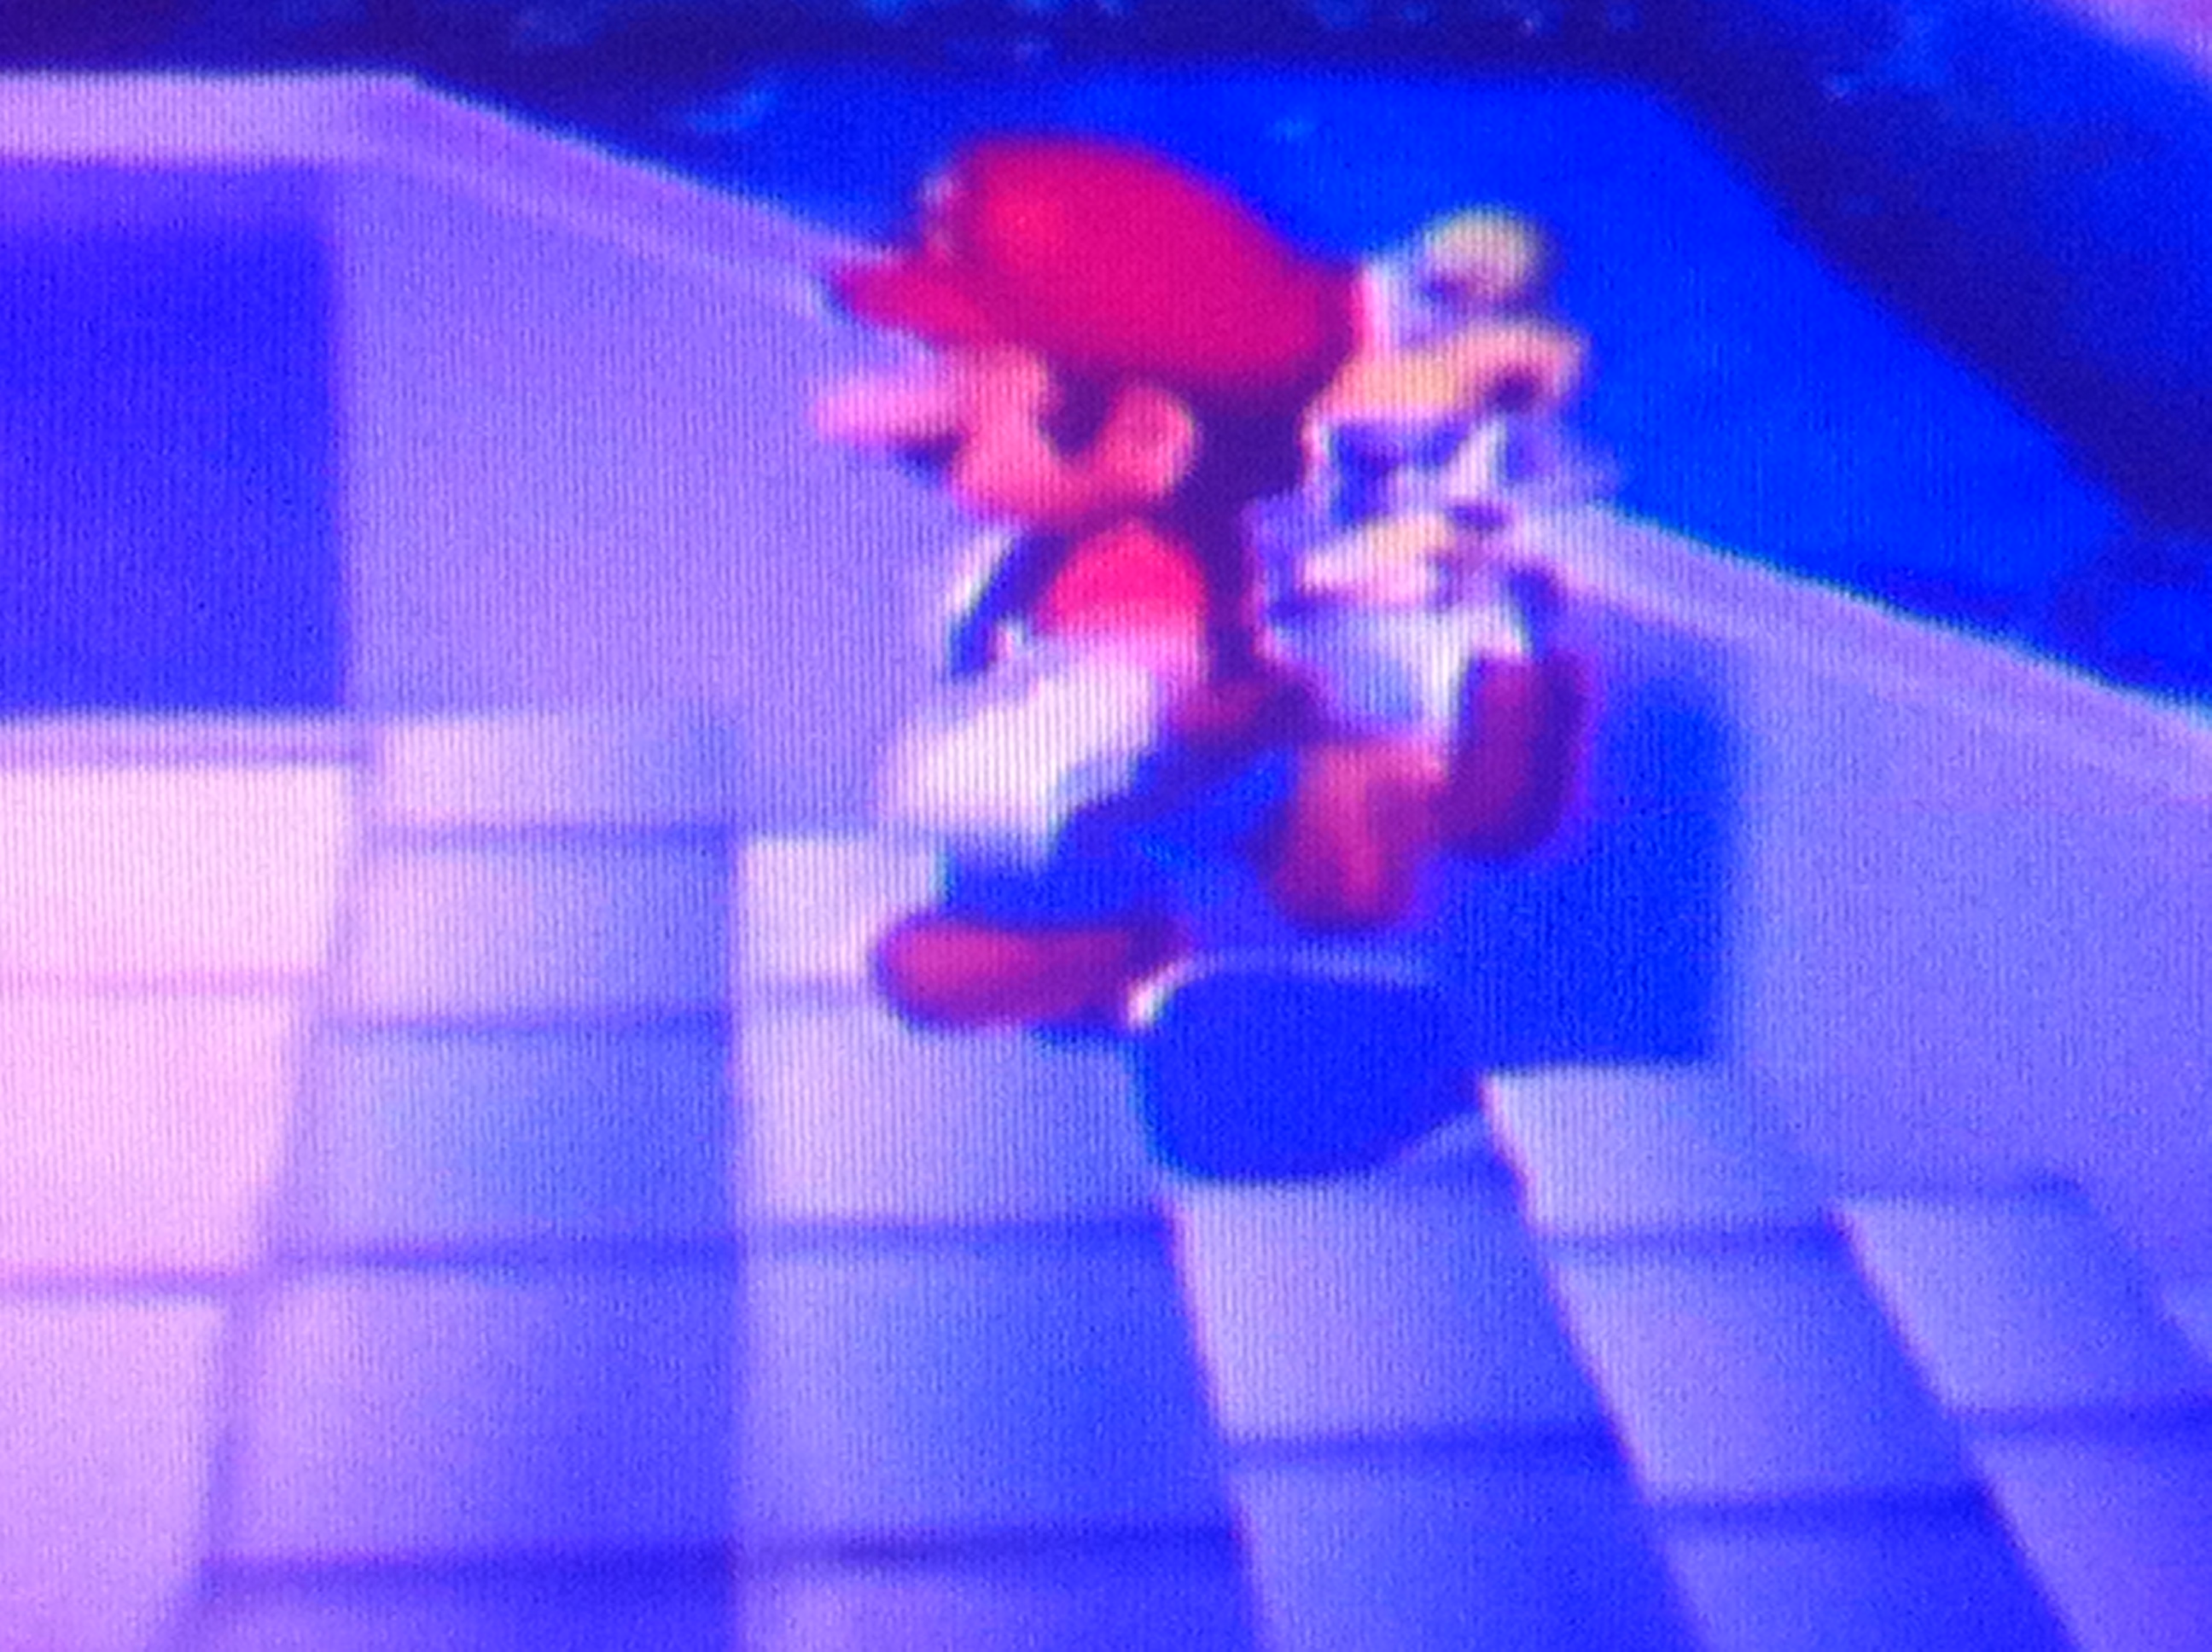 Mario, snapping